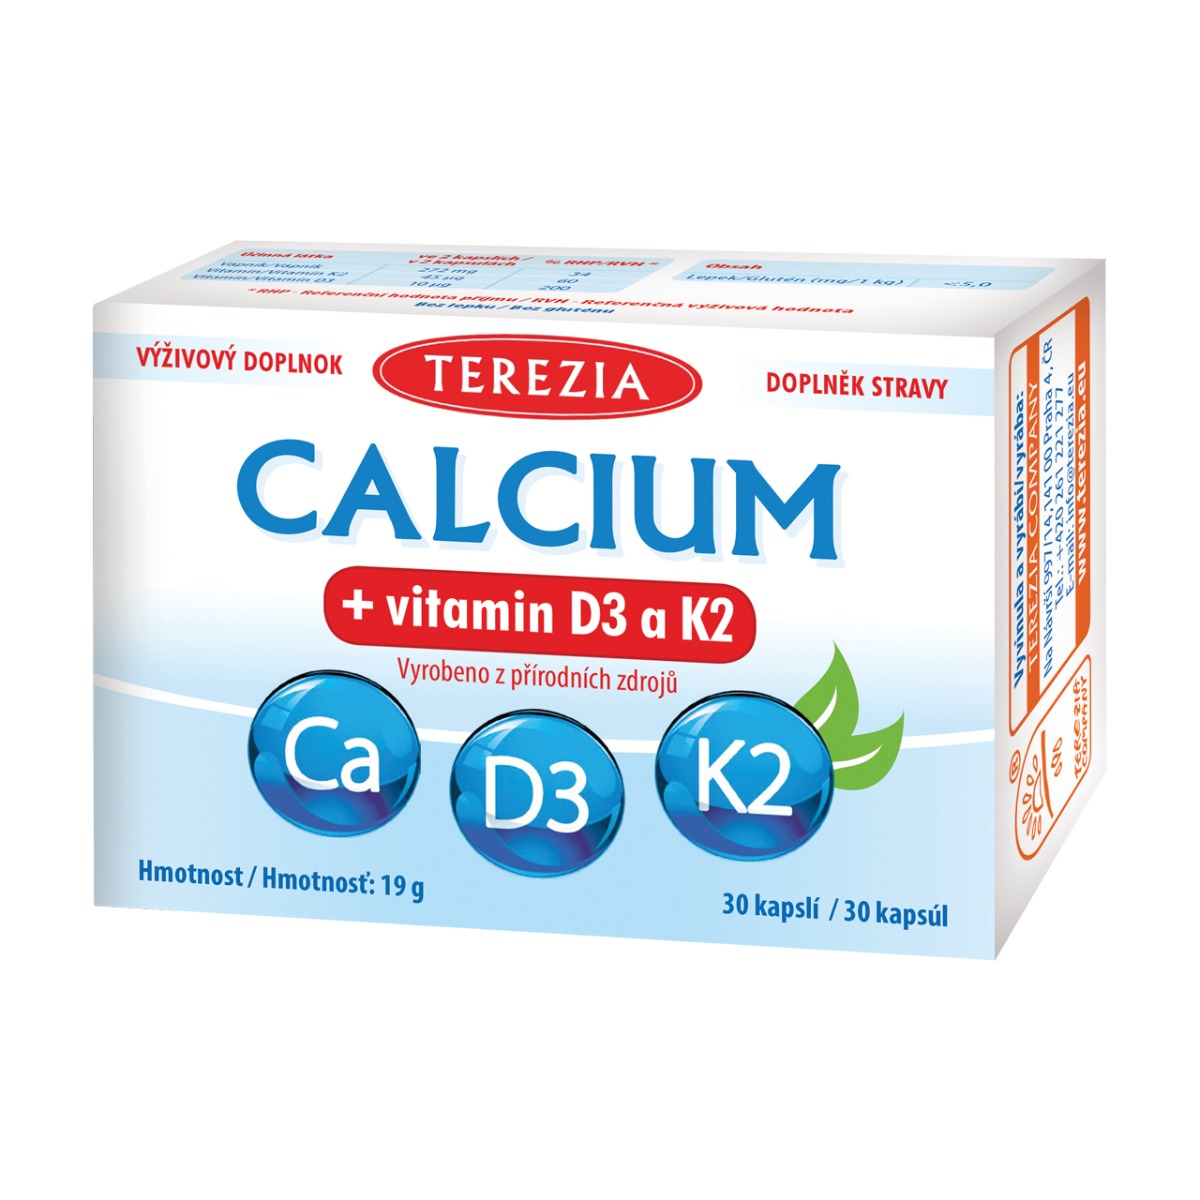 TEREZIA CALCIUM  vitamín D3 a K2